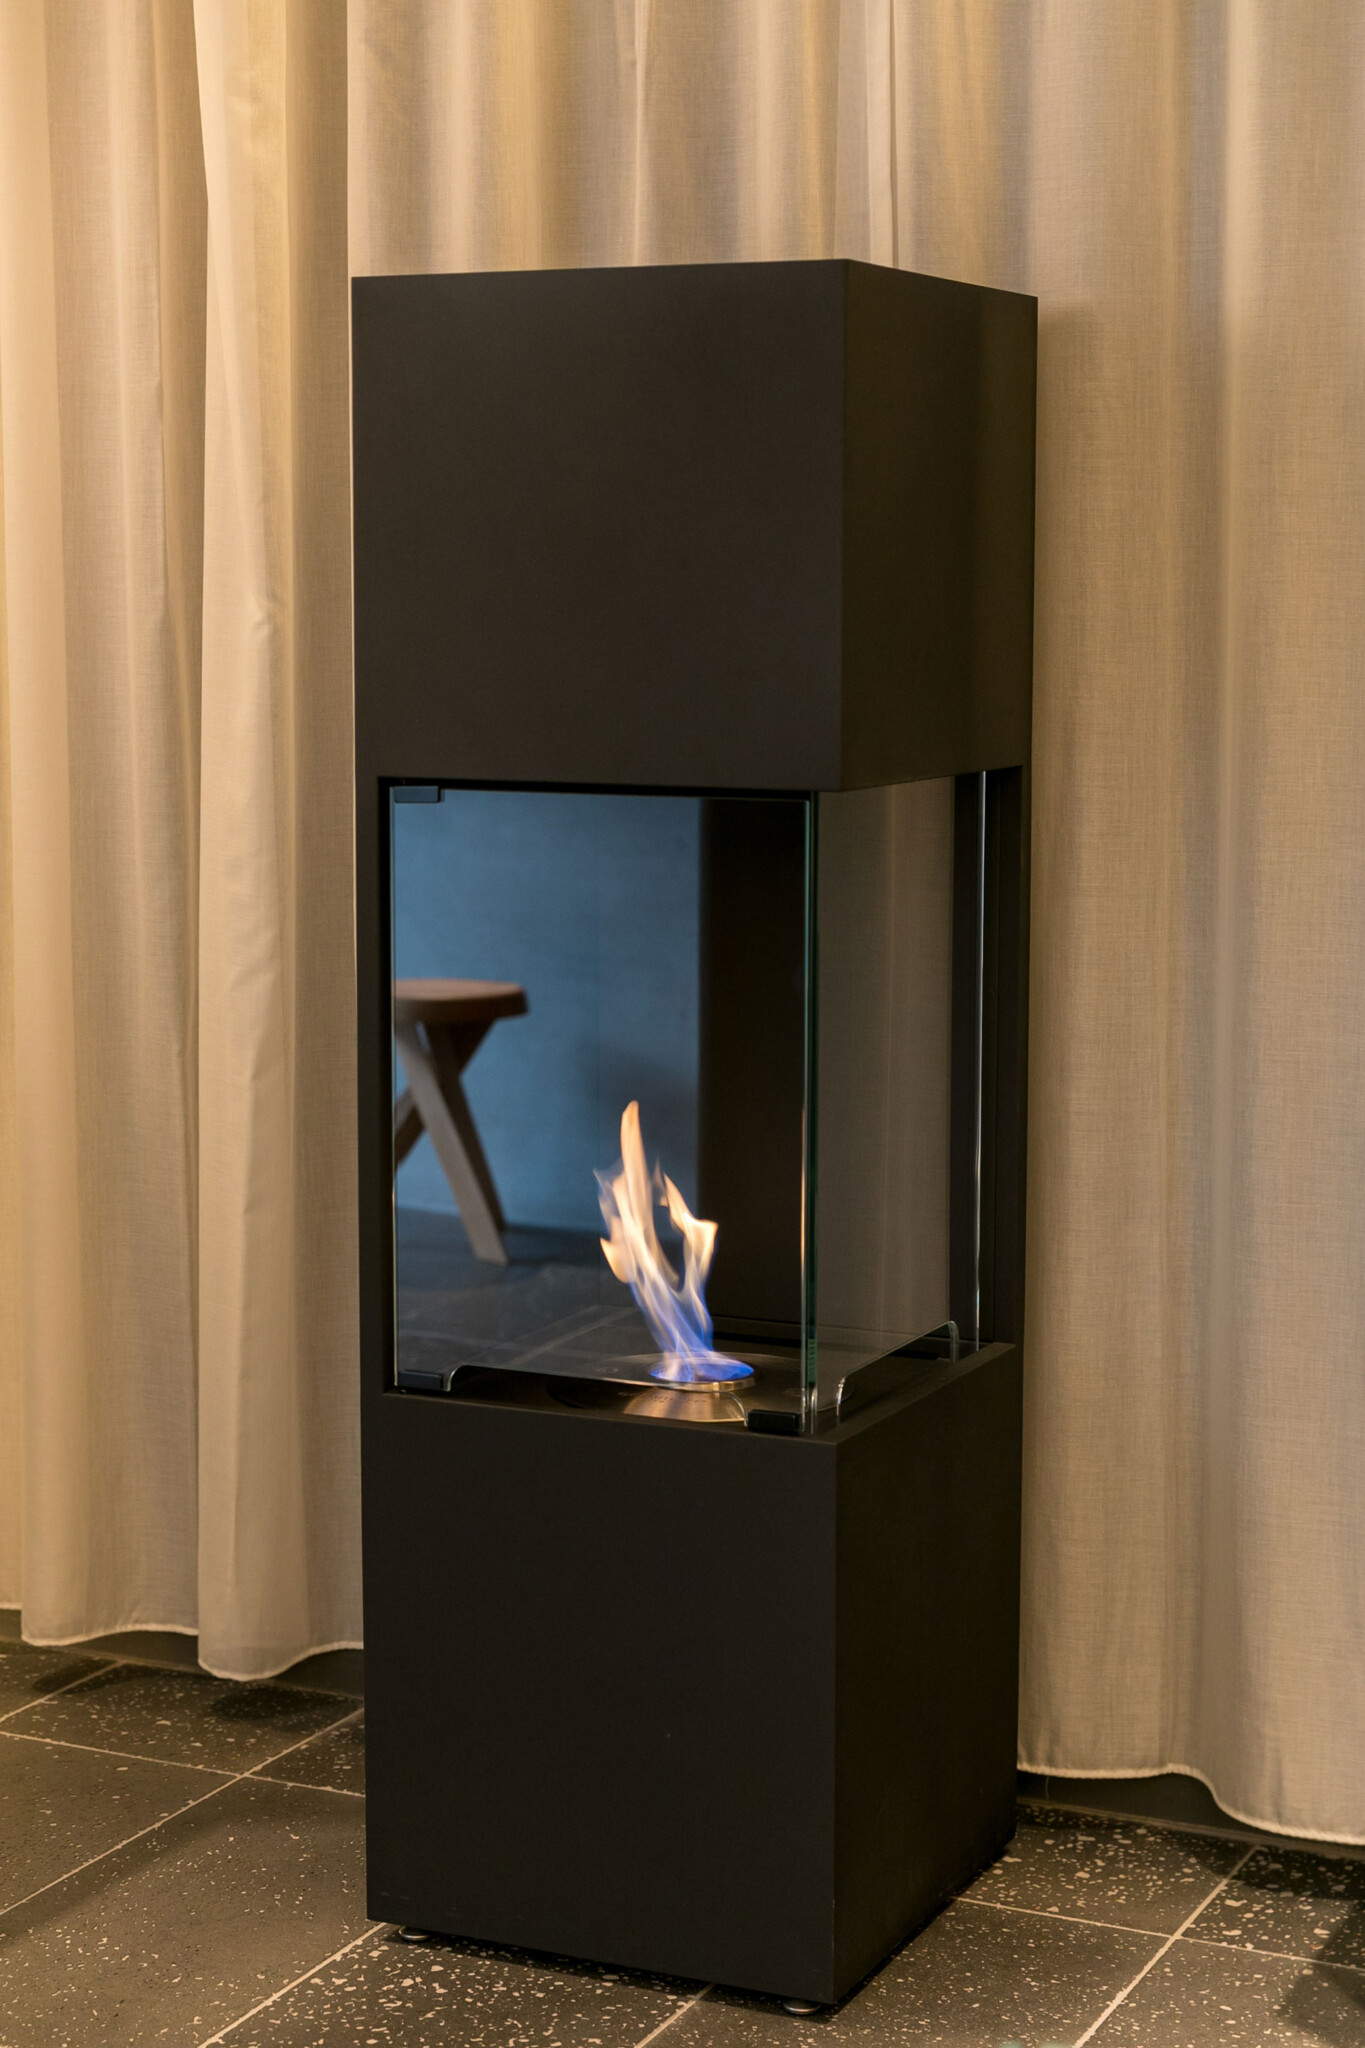 円形のバイオエタノール暖炉は高さのある炎を楽しめる。